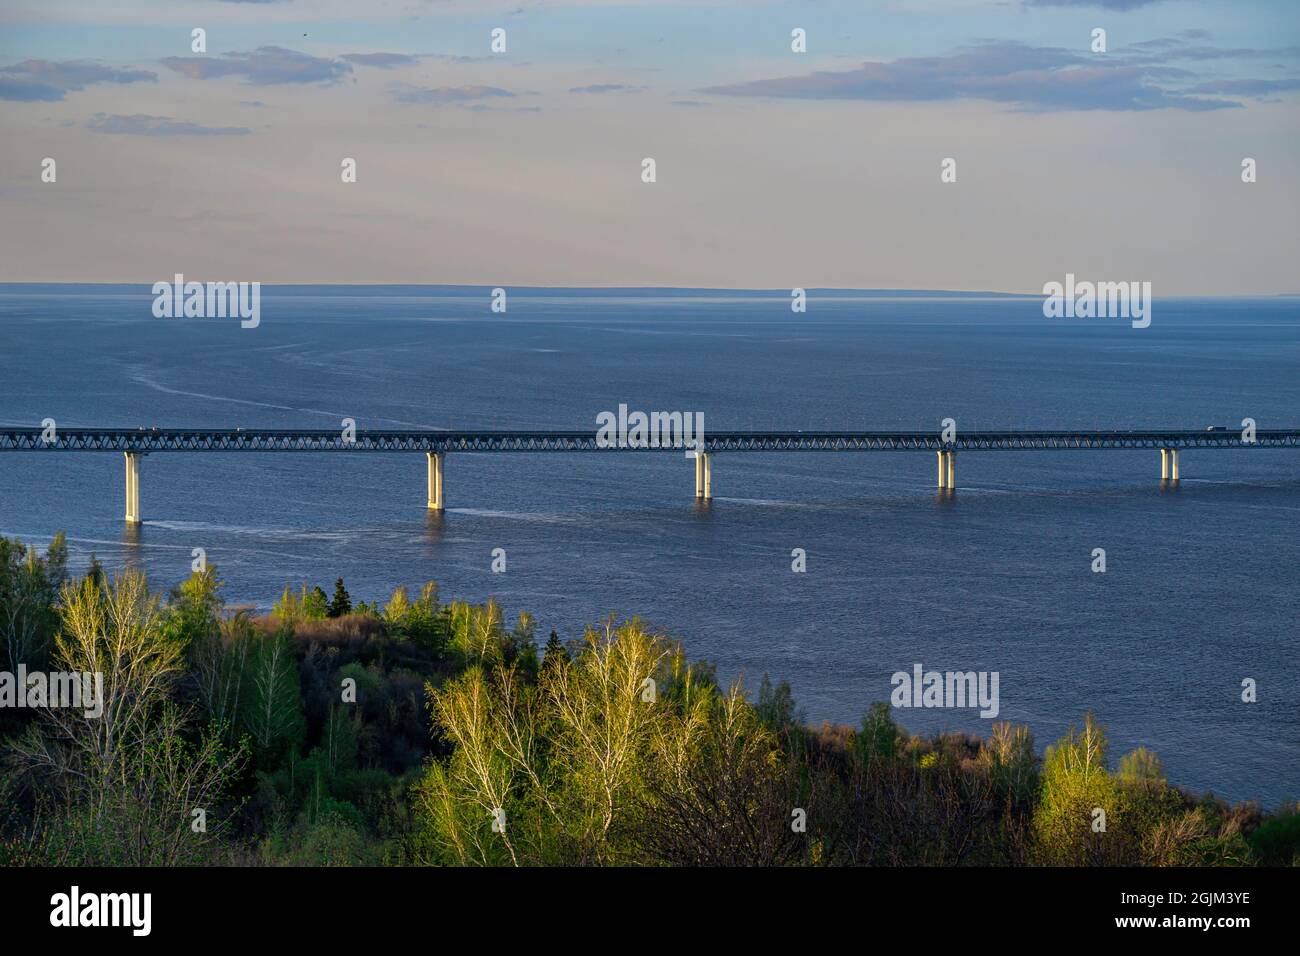 The Presidential Bridge in Ulyanovsk. Bridge over the Volga river . Sunset evening. Stock Photo